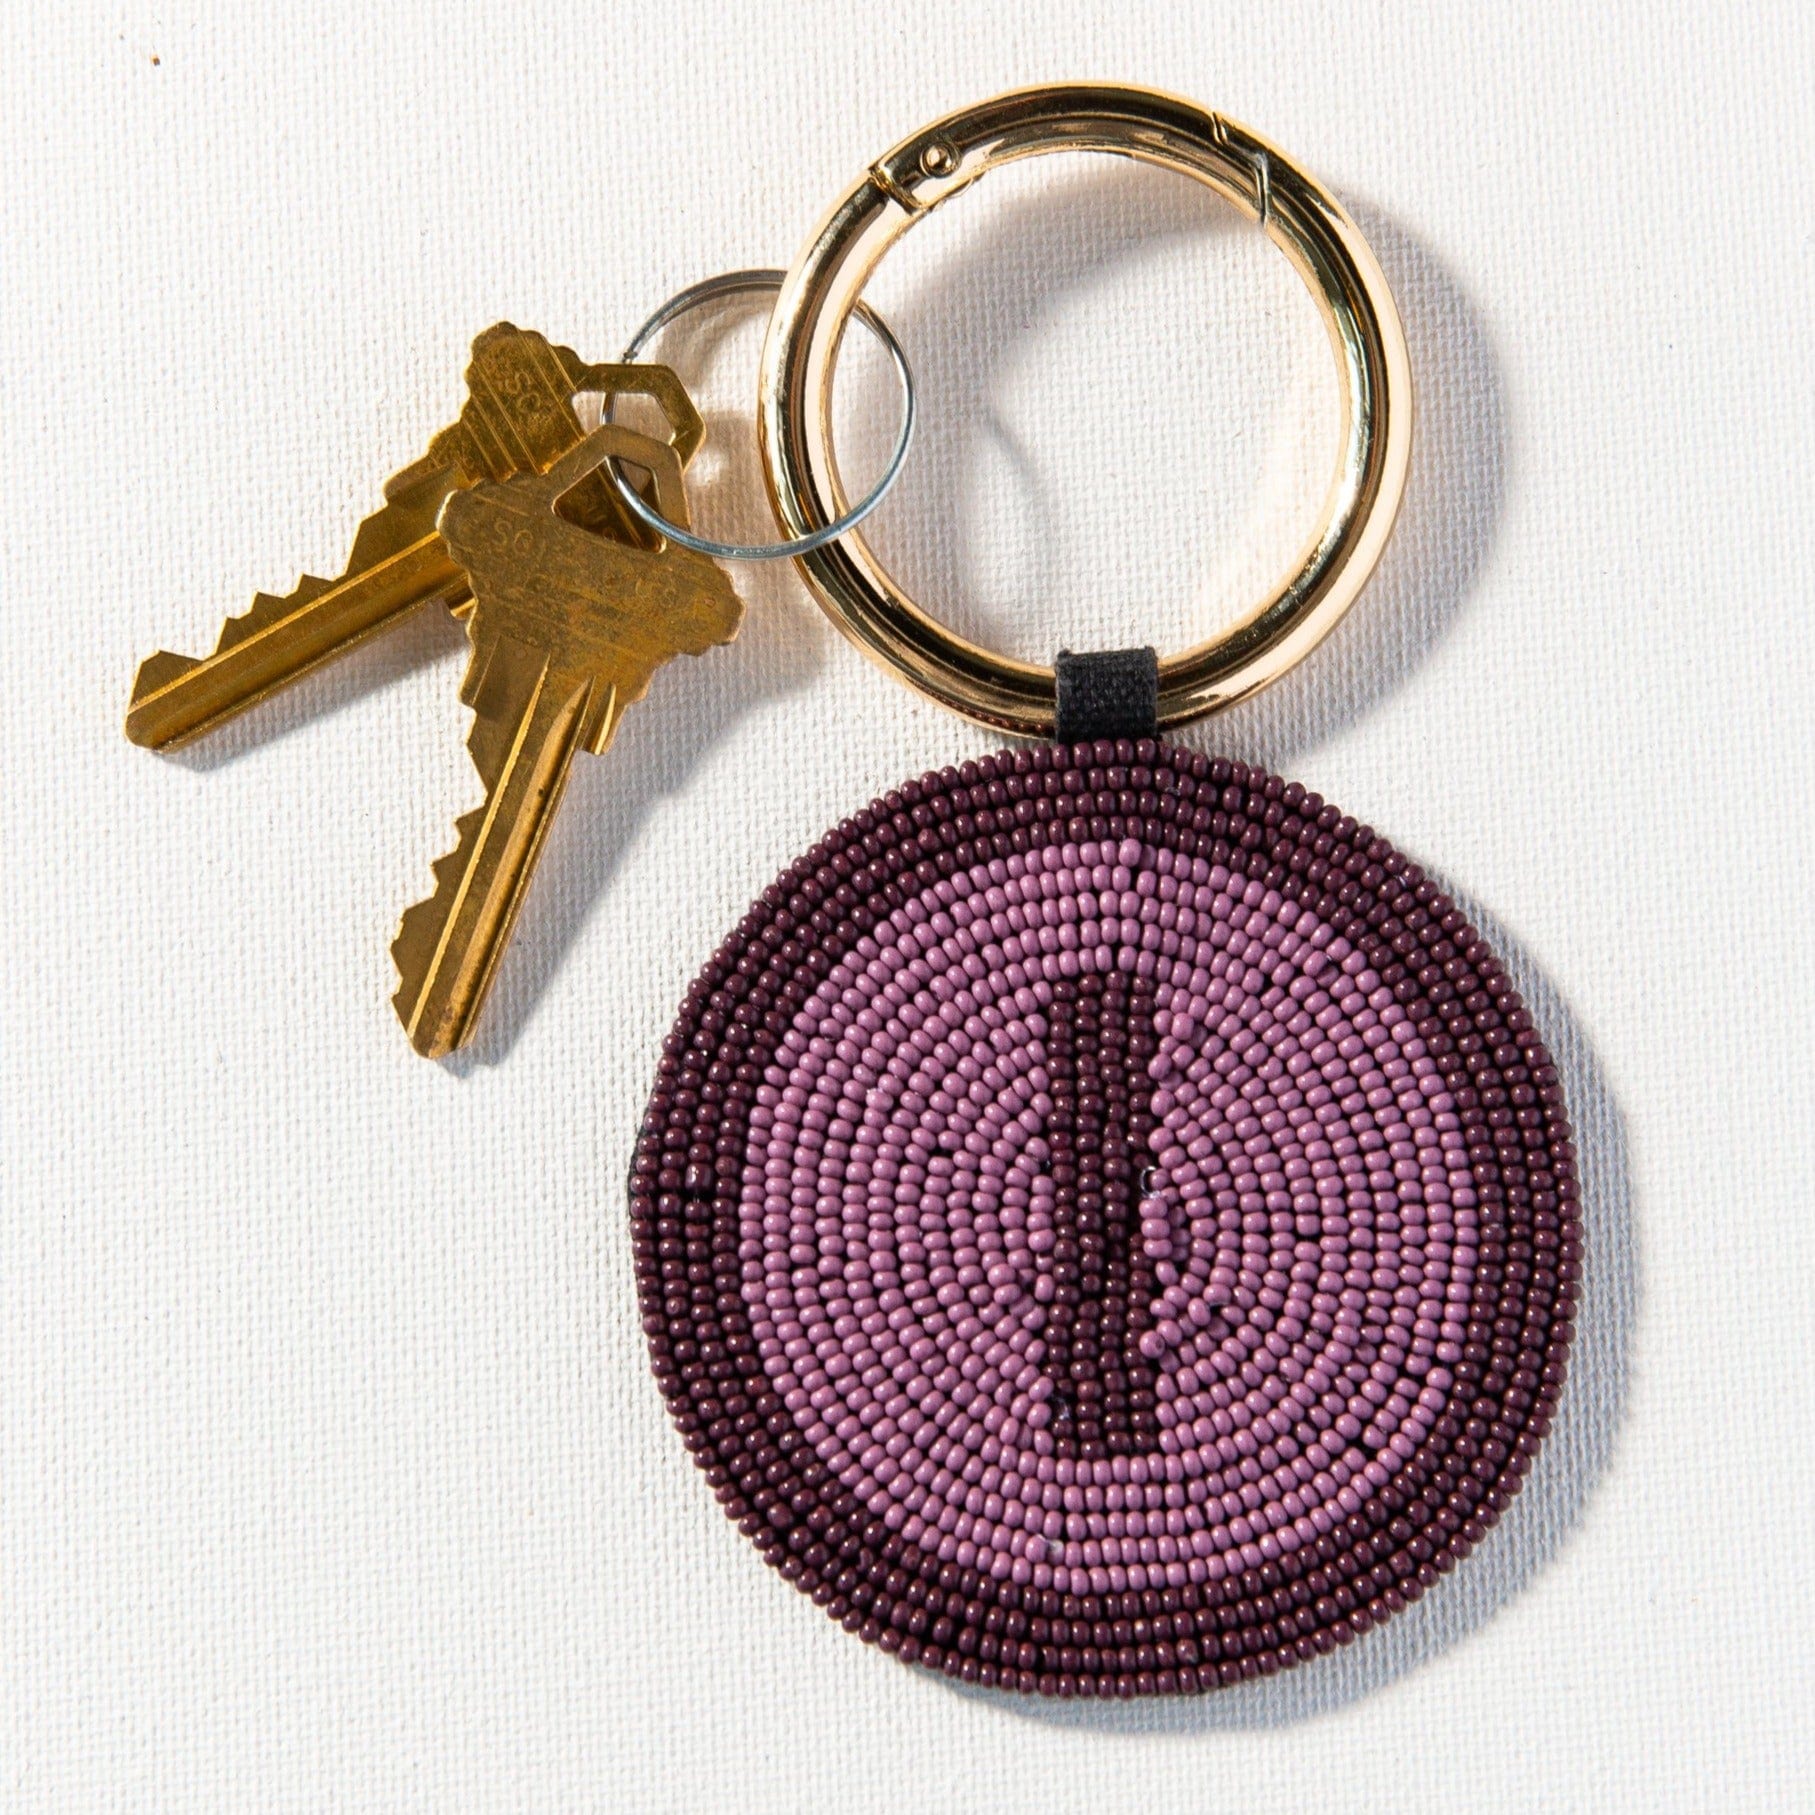 I Purple Monogram Seed Bead Key Ring Wholesale